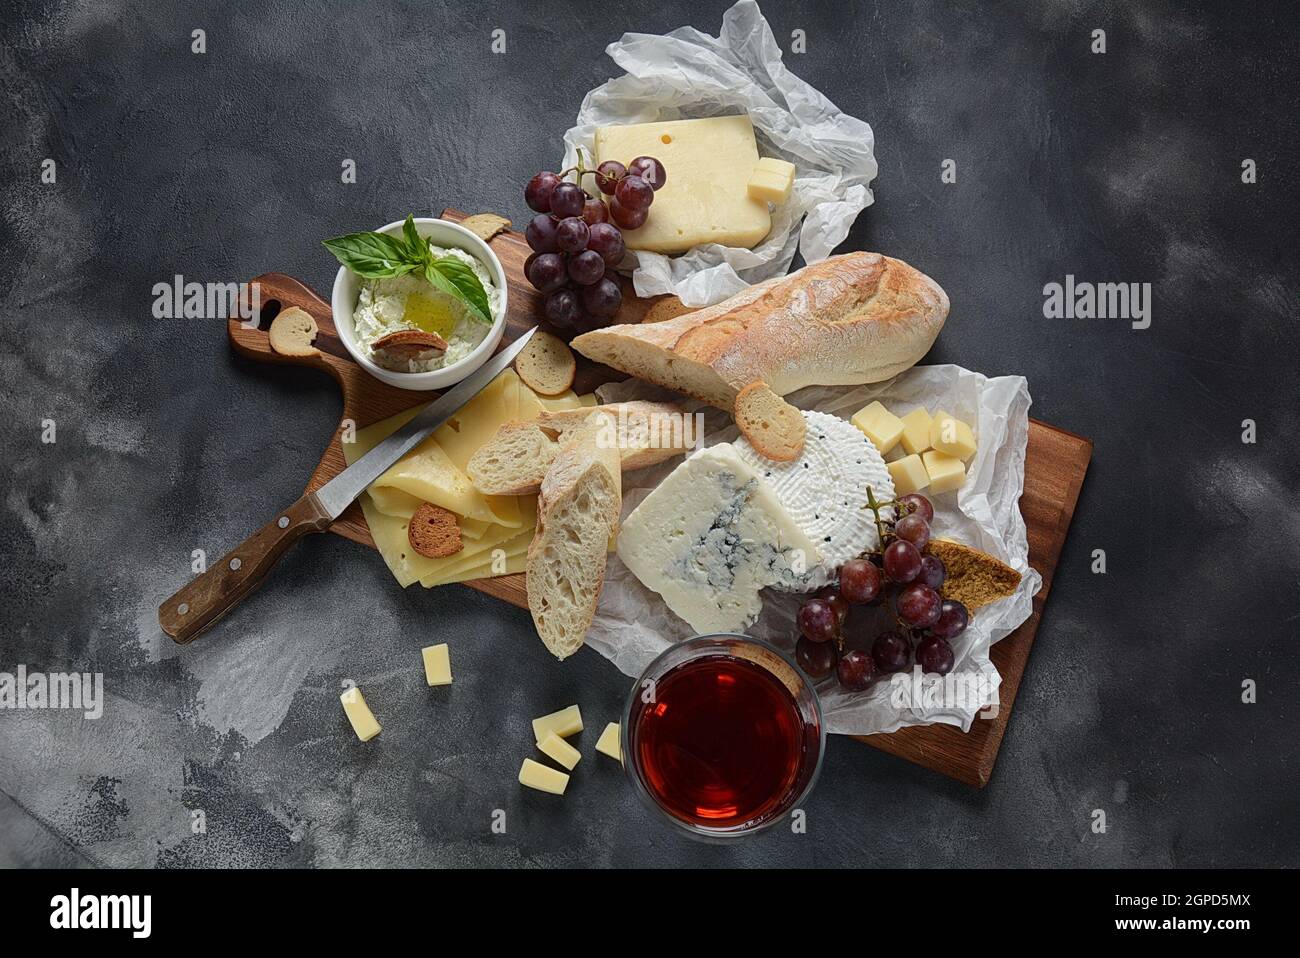 Piatto di formaggi con formaggi assortiti, uva, spuntini su sfondo scuro. Antipasto italiano e francese Foto Stock